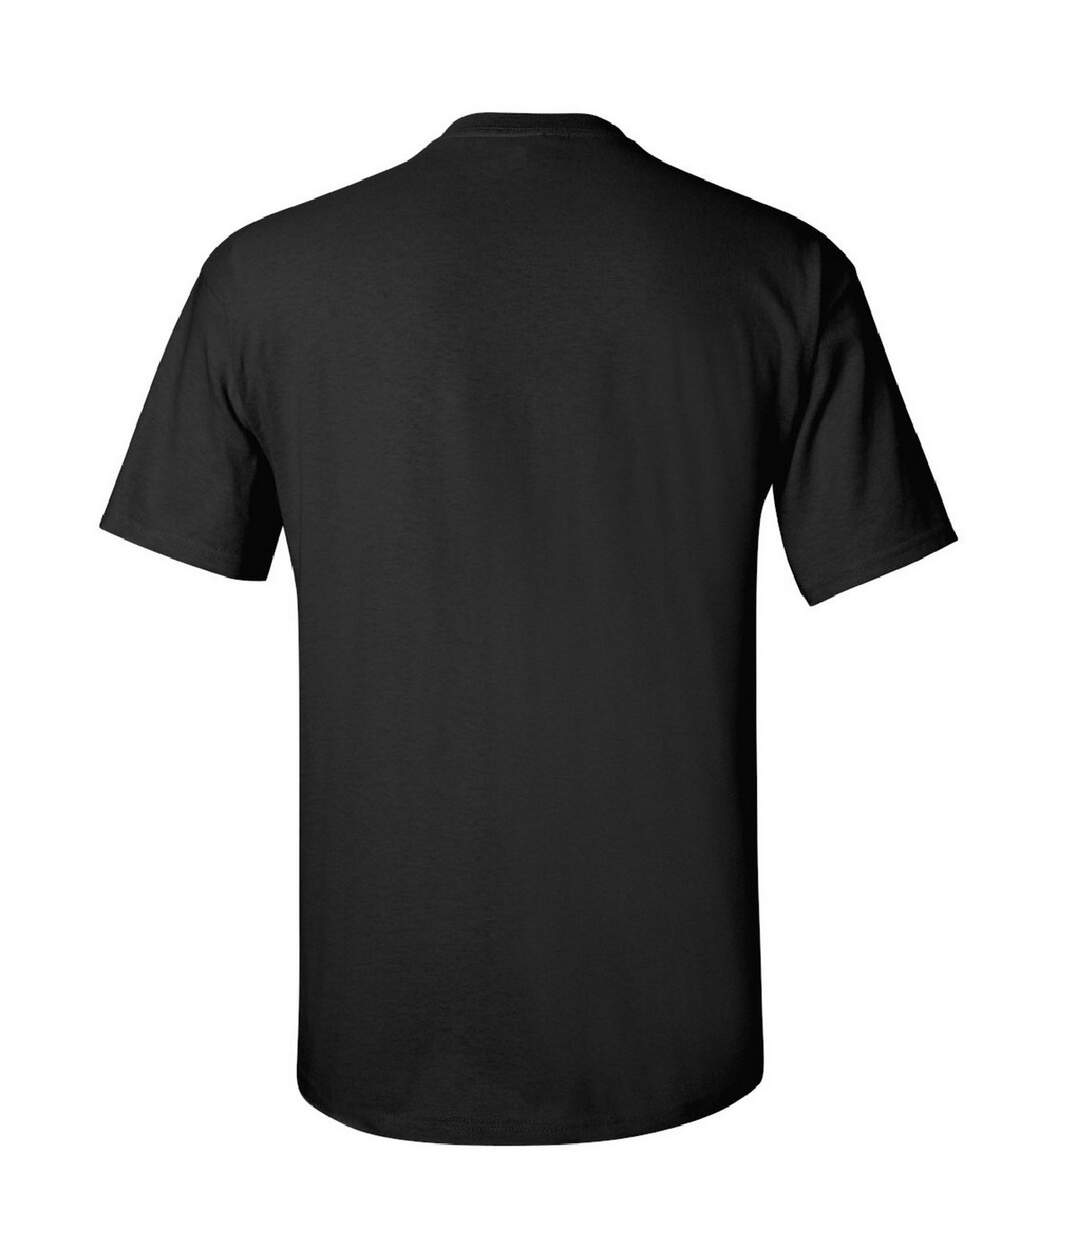 Gildan - T-shirt à manches courtes - Homme (Noir) - UTBC475